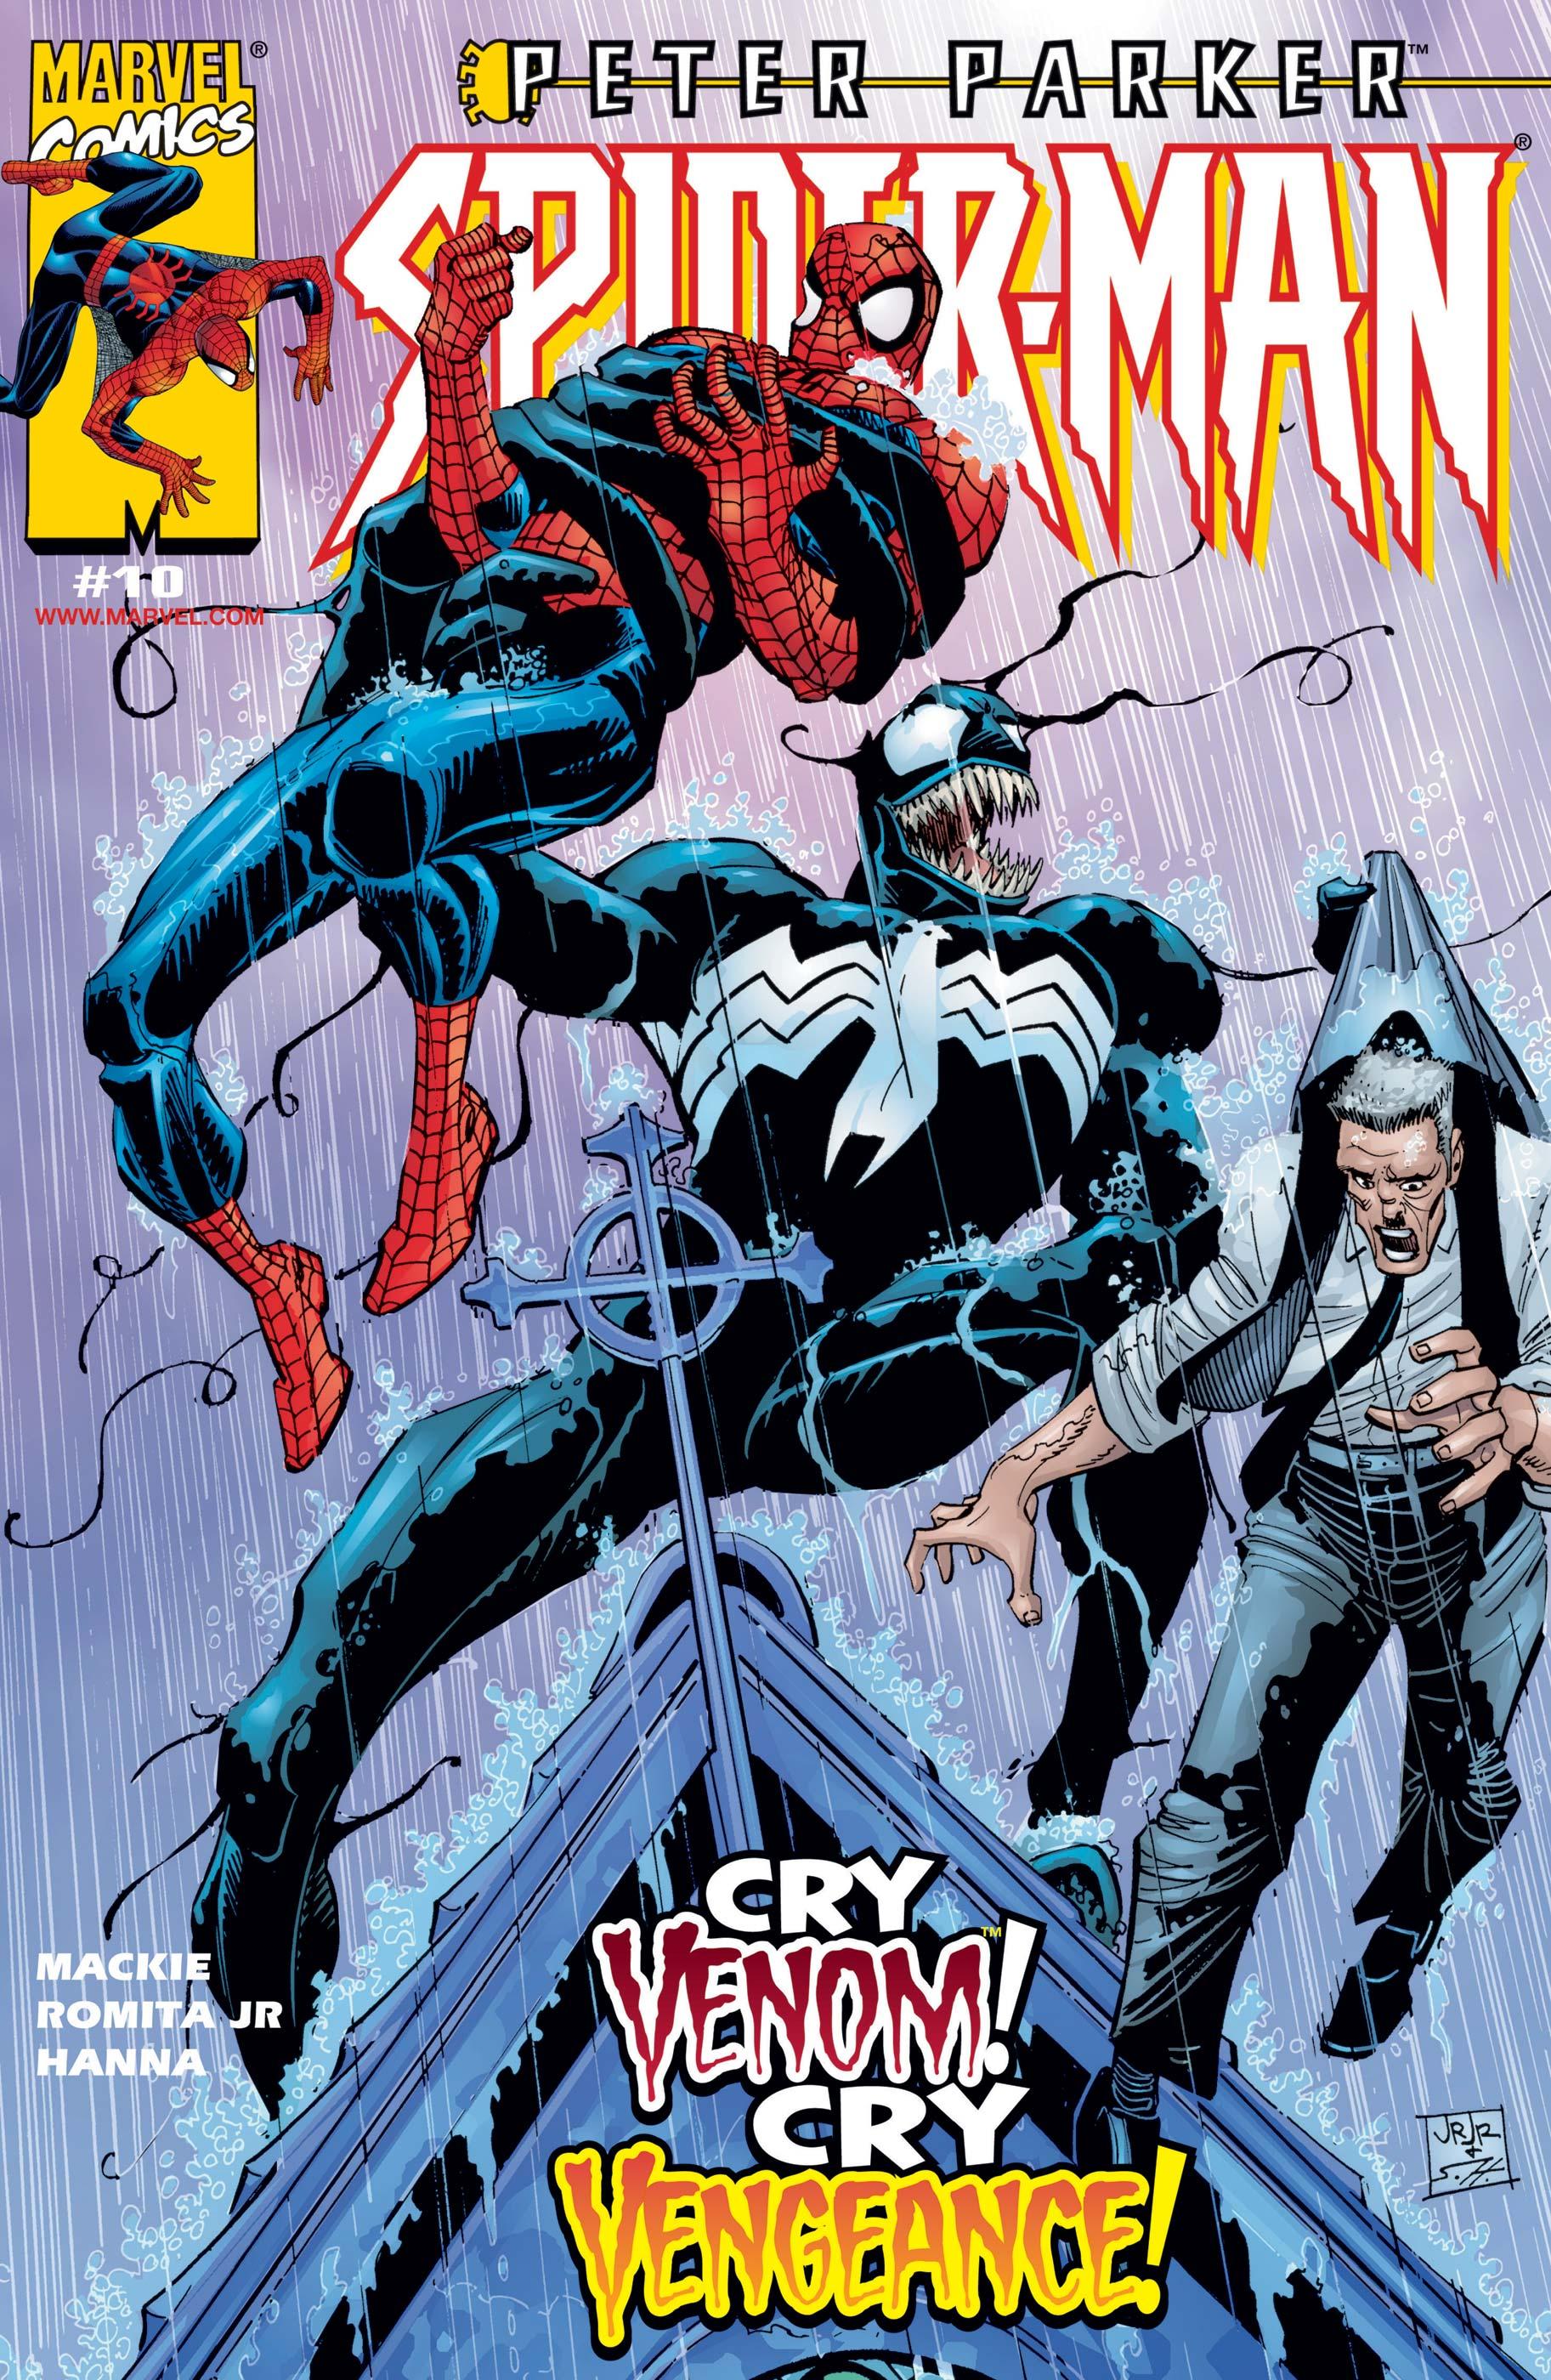 PETER PARKER SPIDER-MAN #8#9#10#11#12 - MARVEL COMICS (1999)